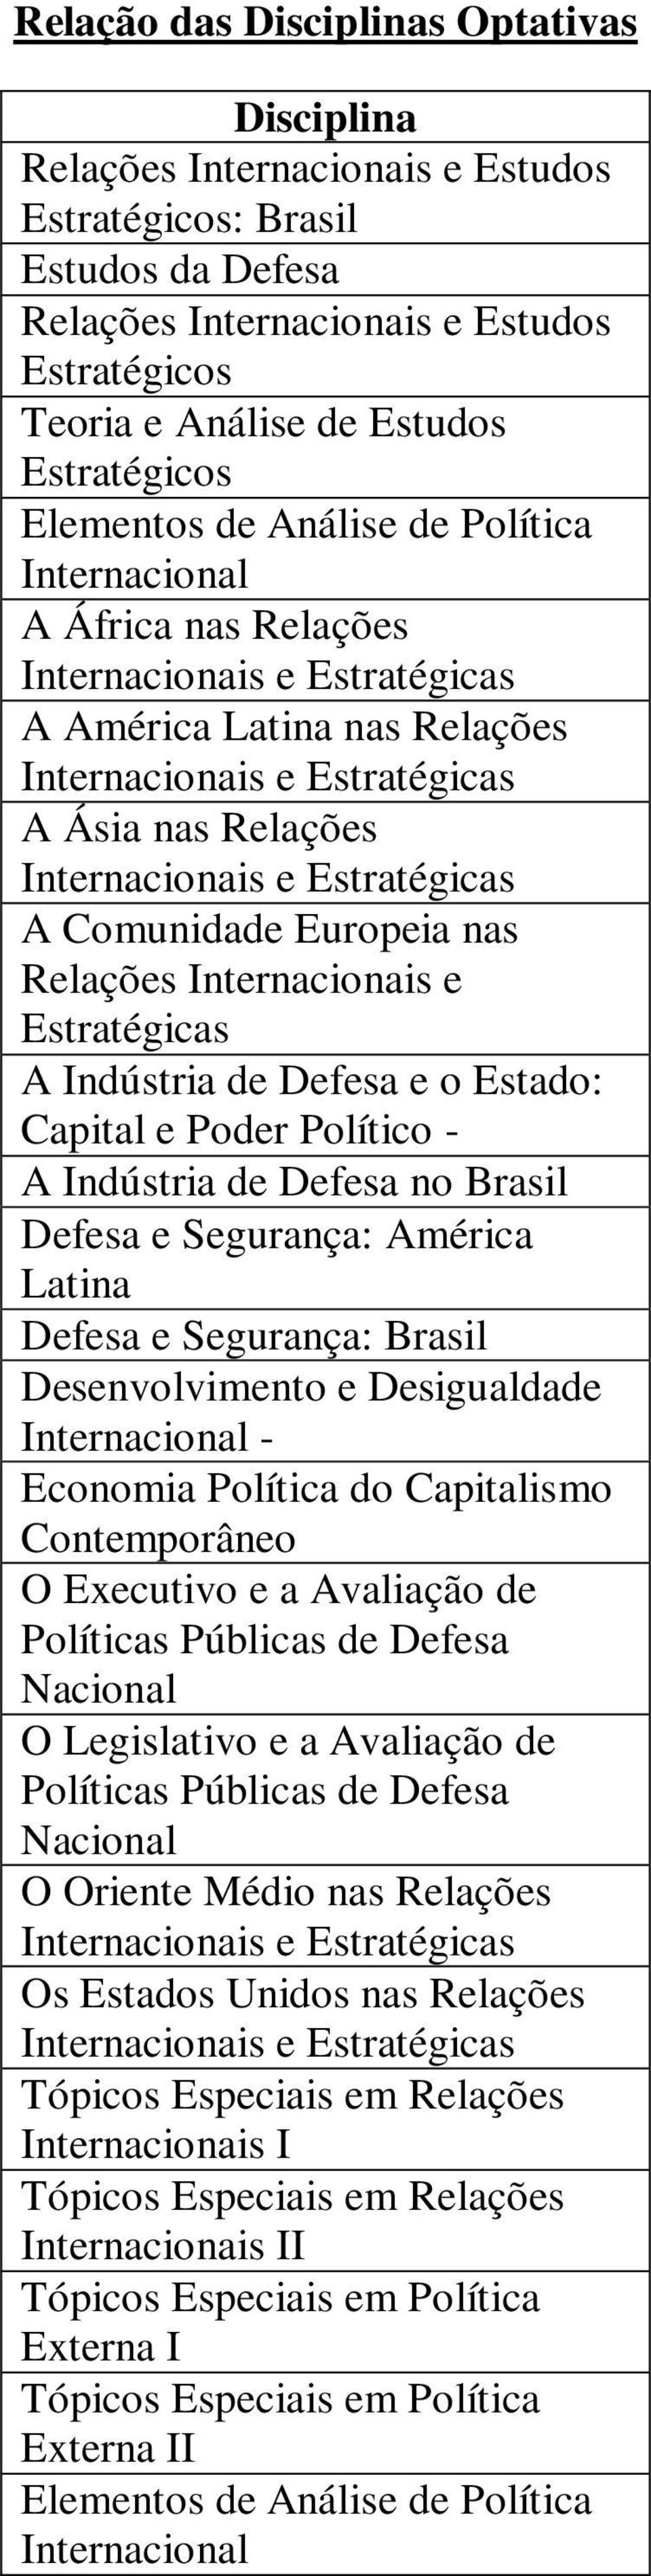 Segurança: América Latina Defesa e Segurança: Brasil Desenvolvimento e Desigualdade - Economia Política do Capitalismo Contemporâneo O Executivo e a Avaliação de Políticas Públicas de Defesa Nacional